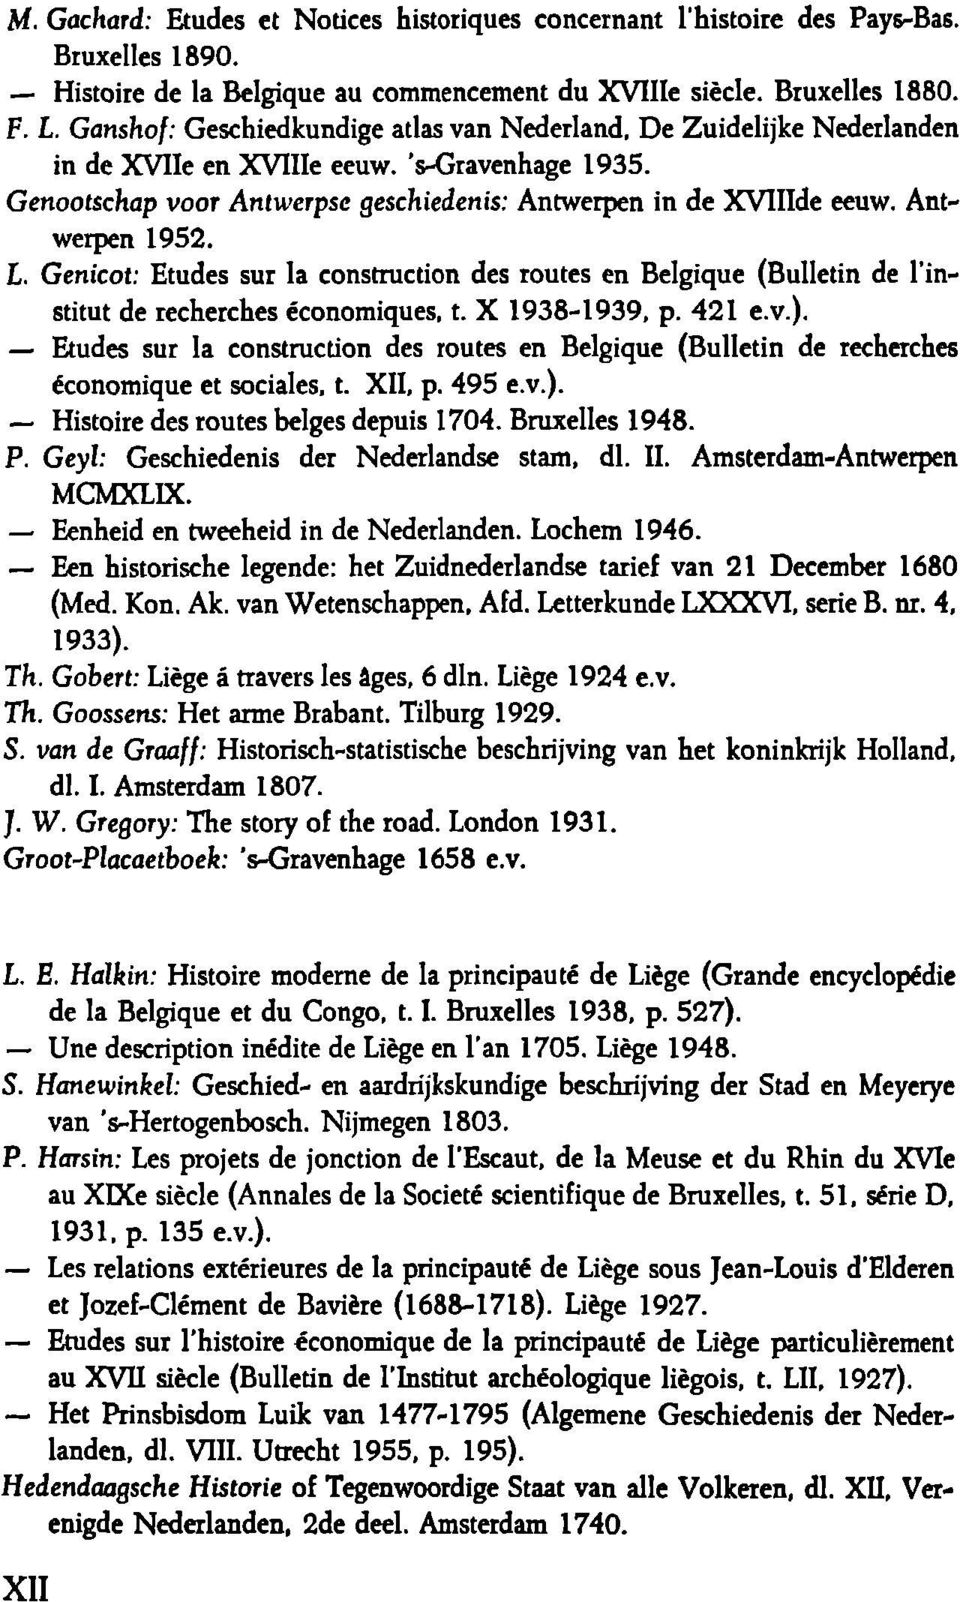 Antwerpen 1952. L. Genicot: Etudes sur la construction des routes en Belgique (Bulletin de l'institut de recherches économiques, t. Χ 1938-1939, p. 421 e.v.).